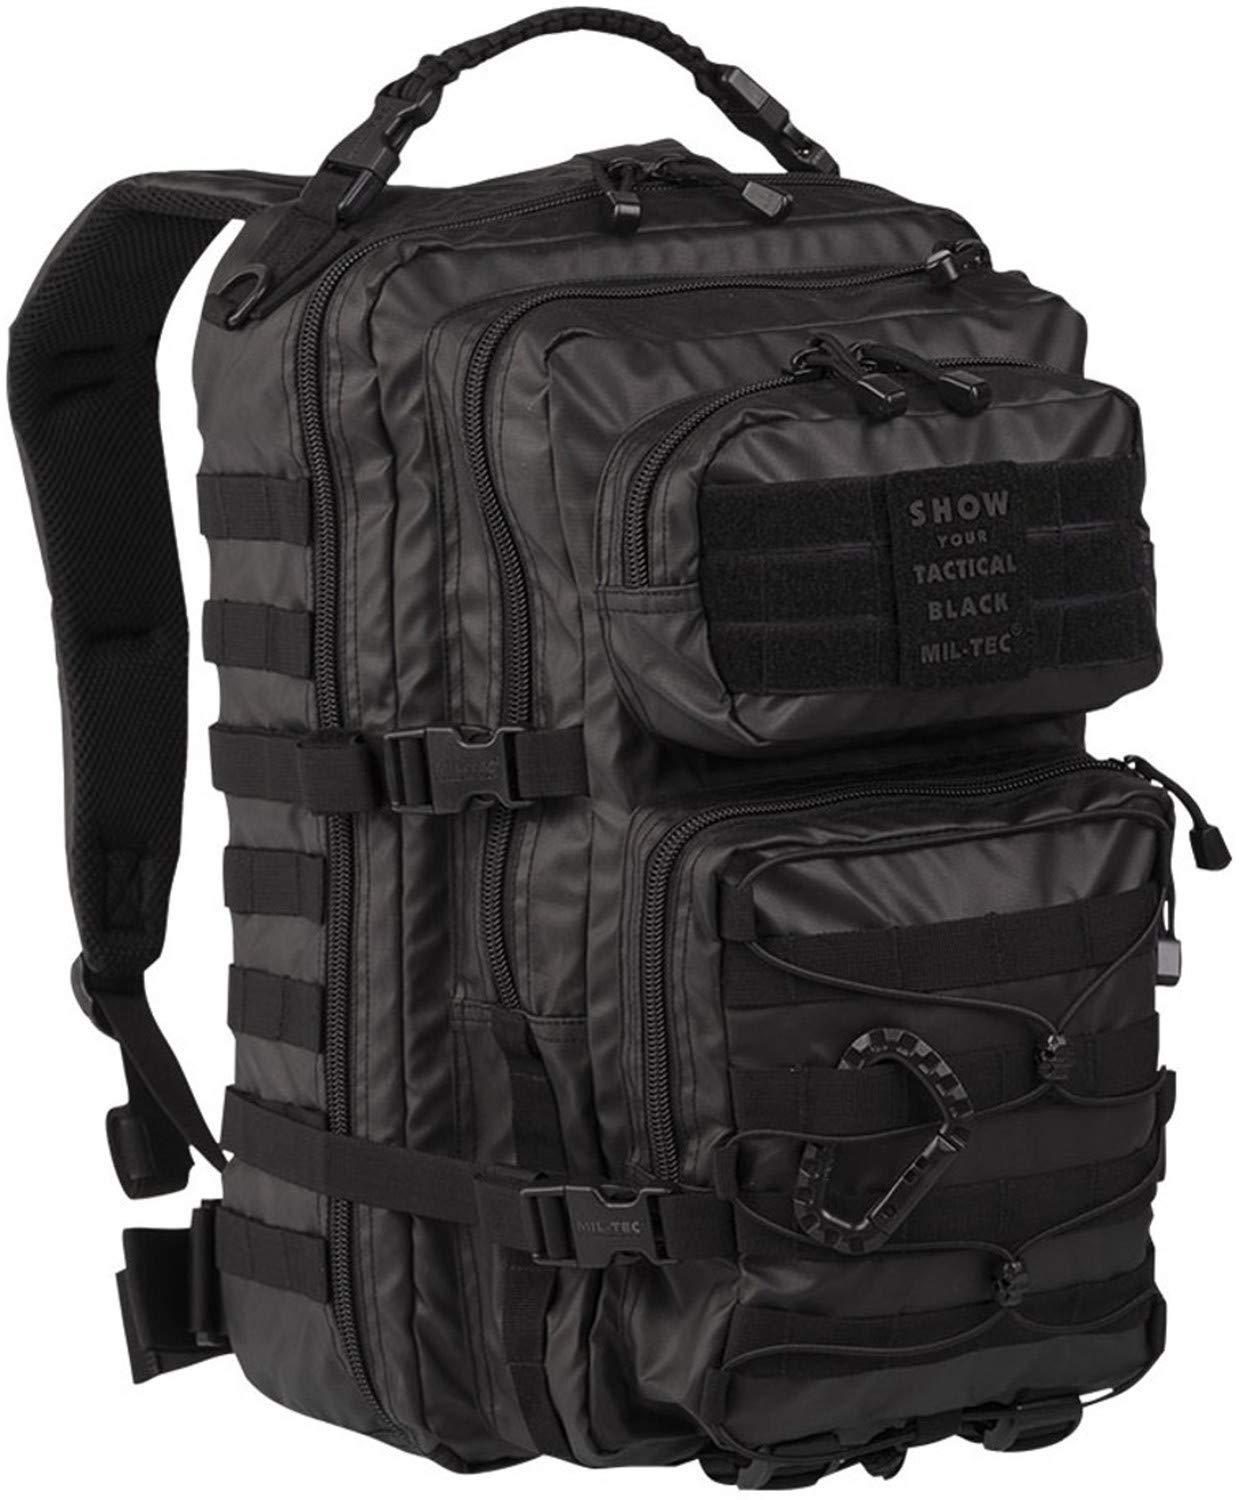 Mil-Tec US Assault Pack Backpack (Large/Tactical Black)